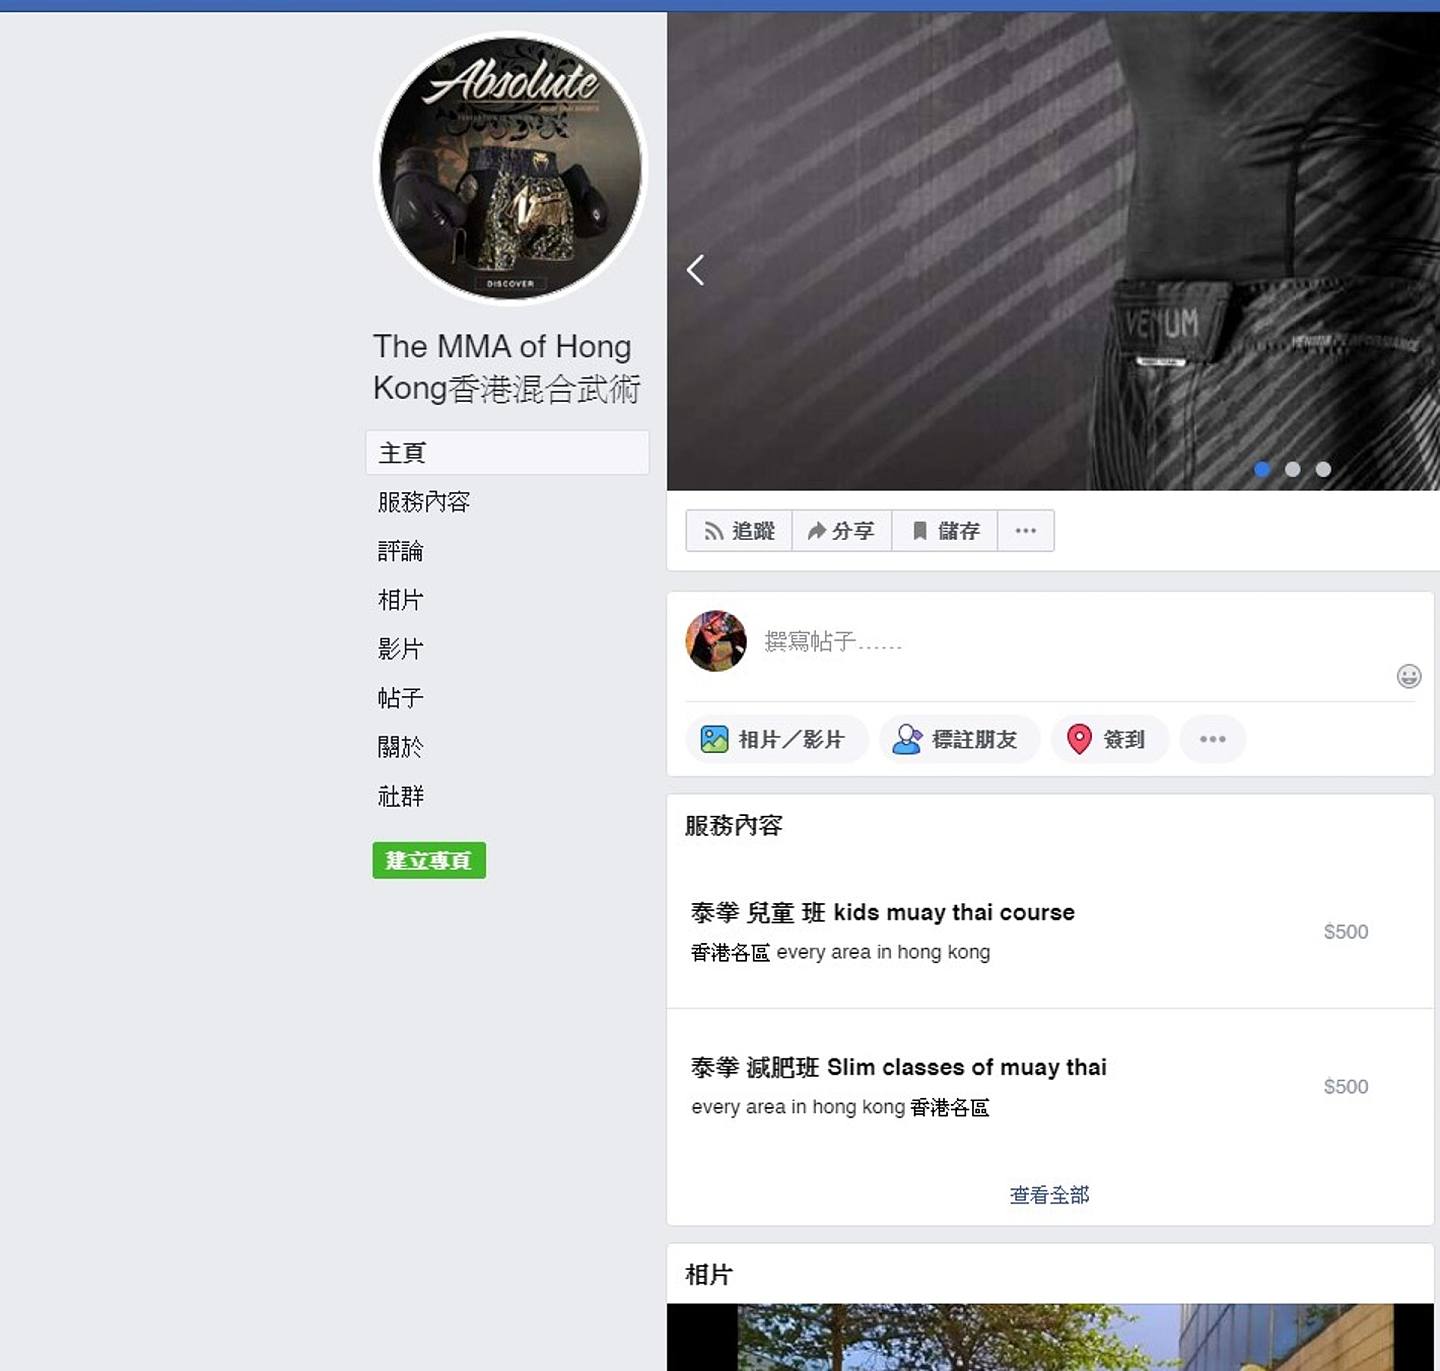 名为「The MMA of Hong Kong 香港混合武术」的fb专页，发布数段教学短片，当中包括向学员教授武术的内容。 （网上图片）